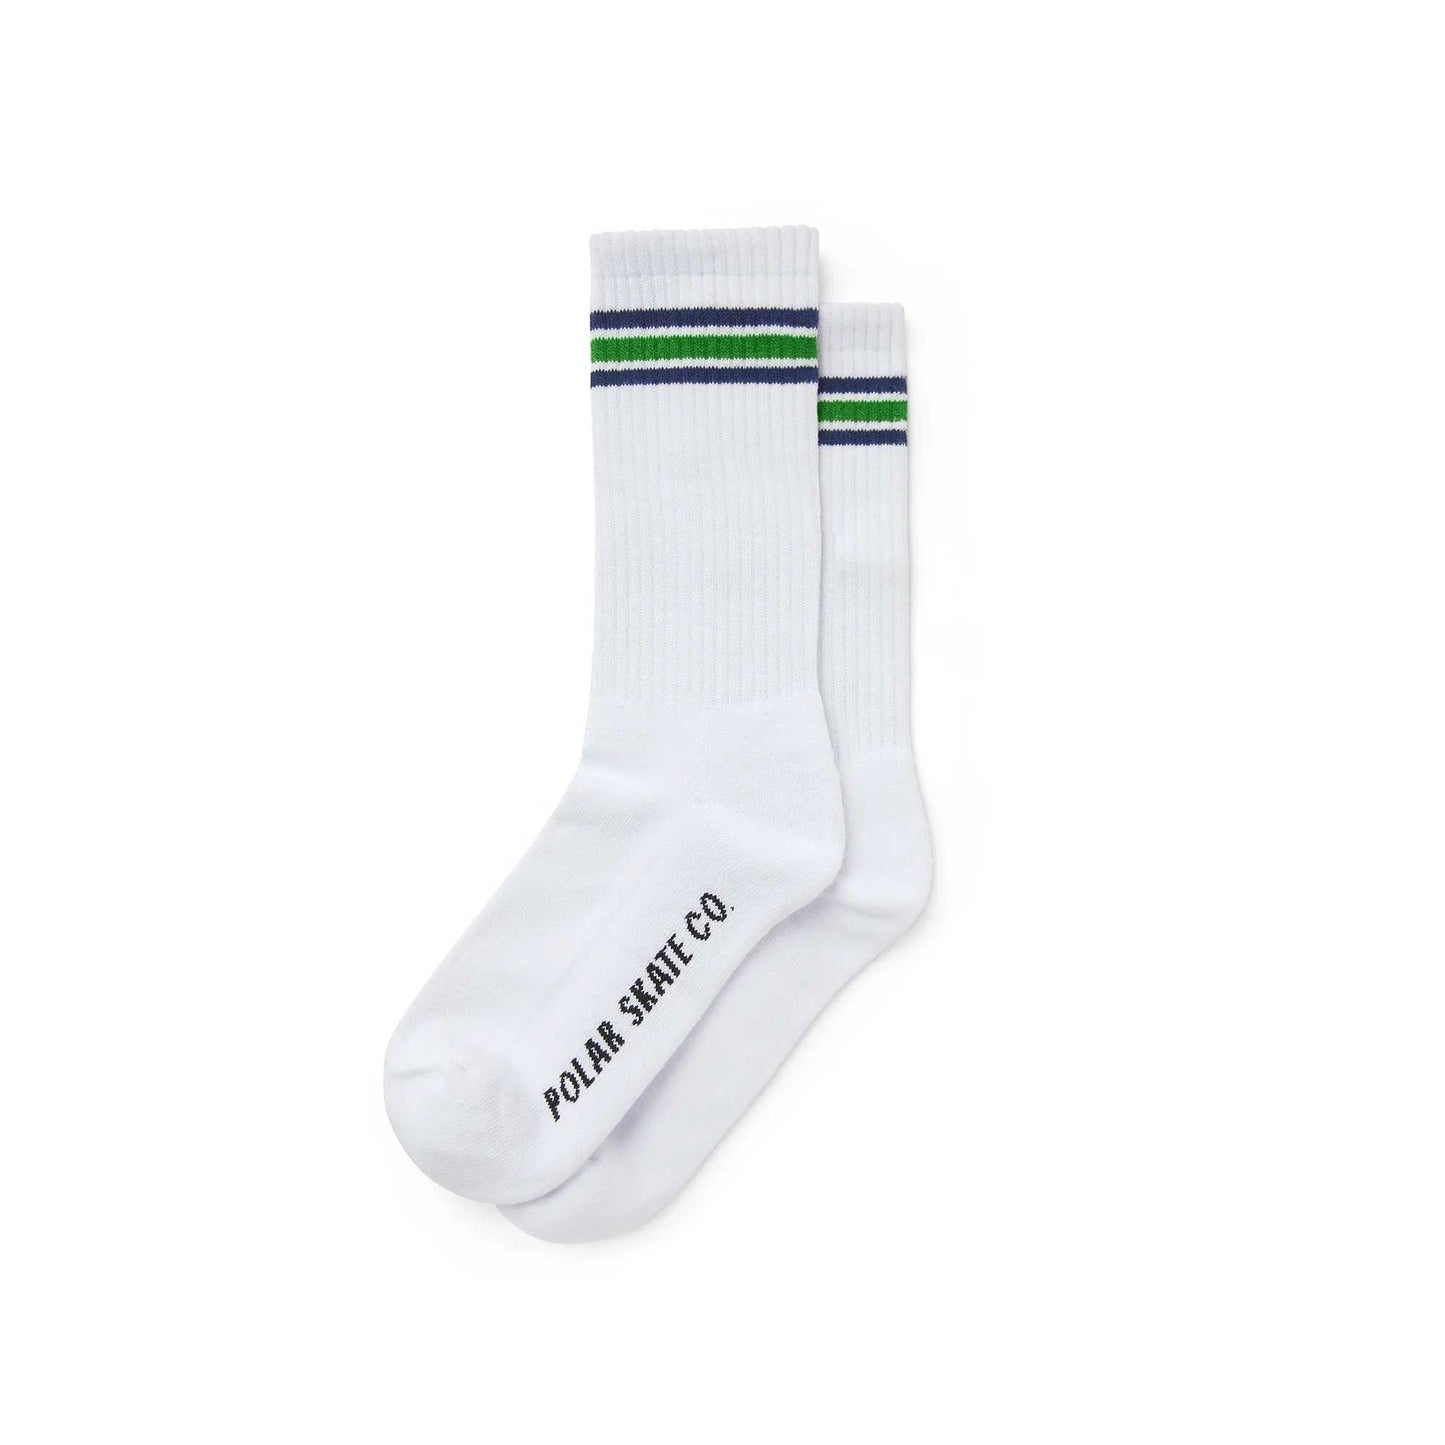 Polar Stripe Socks, white / blue / green - Tiki Room Skateboards - 1